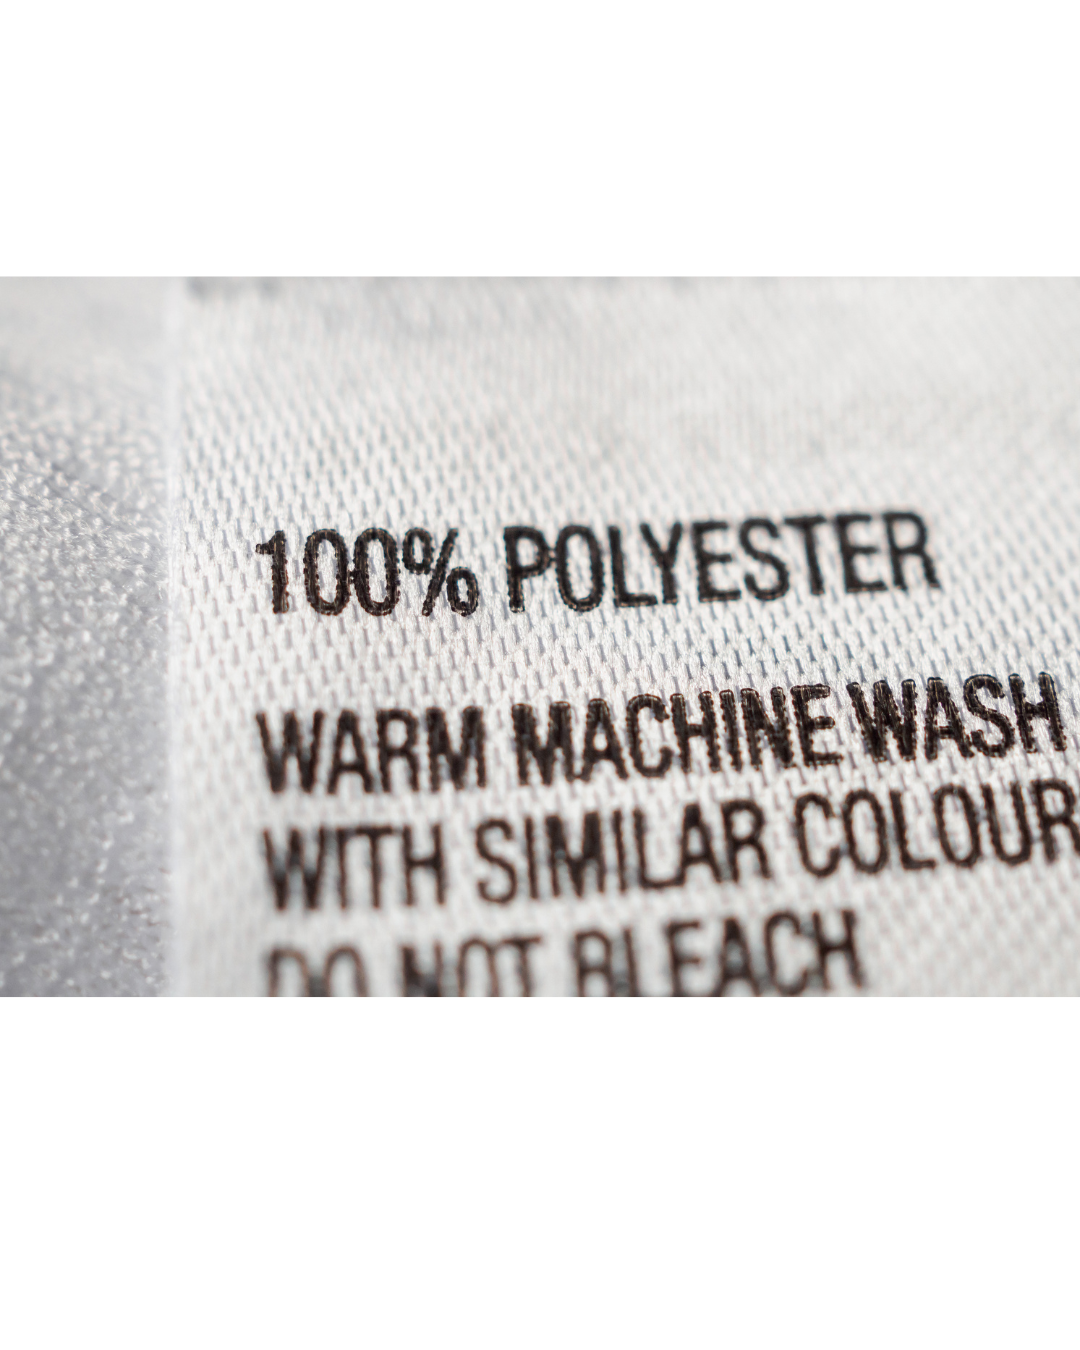 étiquelle de vêtement indiquant que c'est du 100% polyester